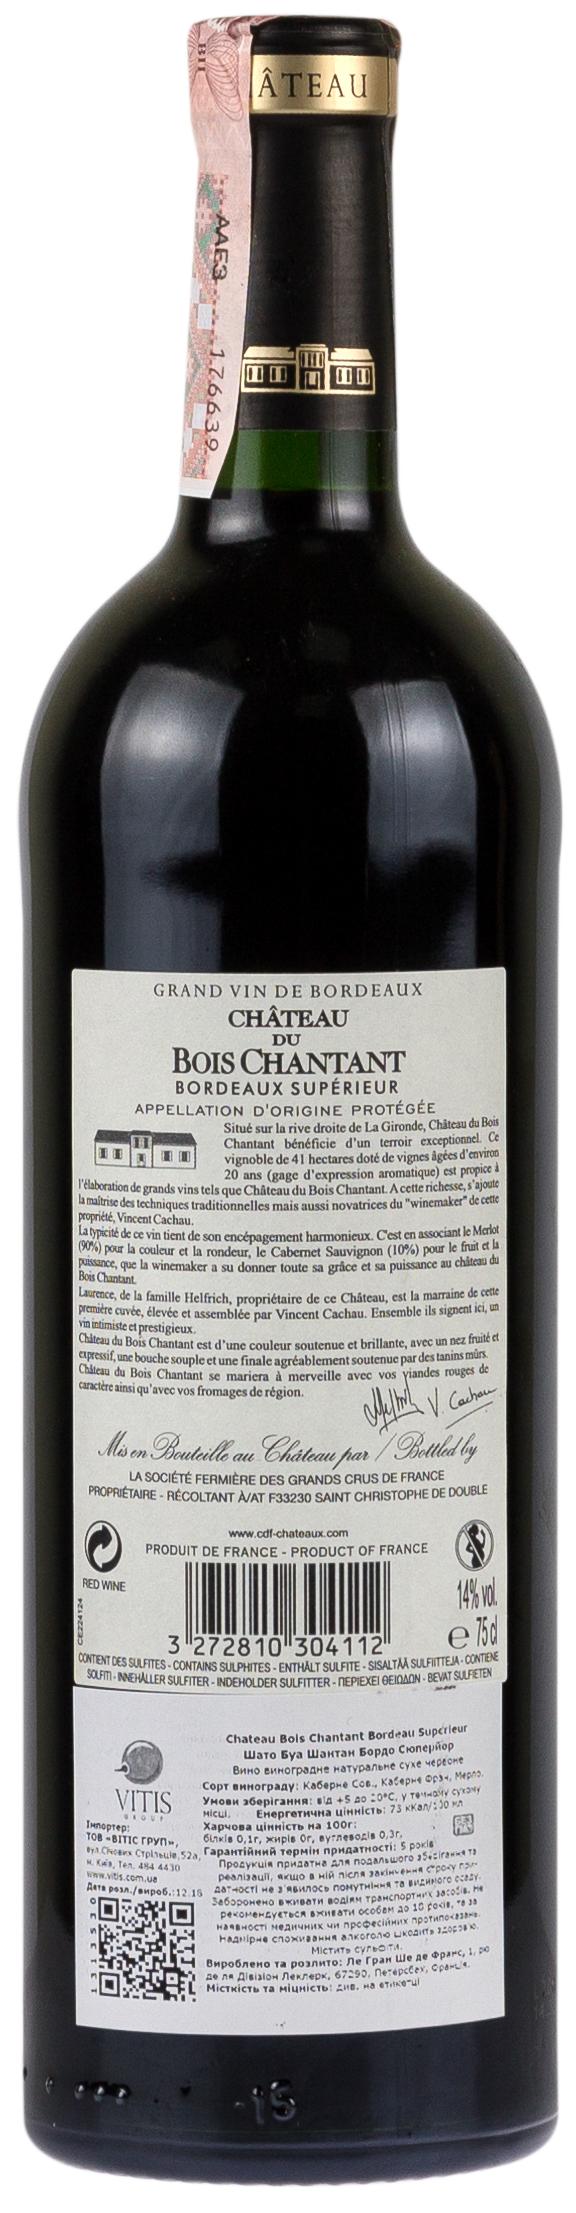 Chateau du Bois Chantant Bordeaux Superieur 2016 Set 6 bottles - 2